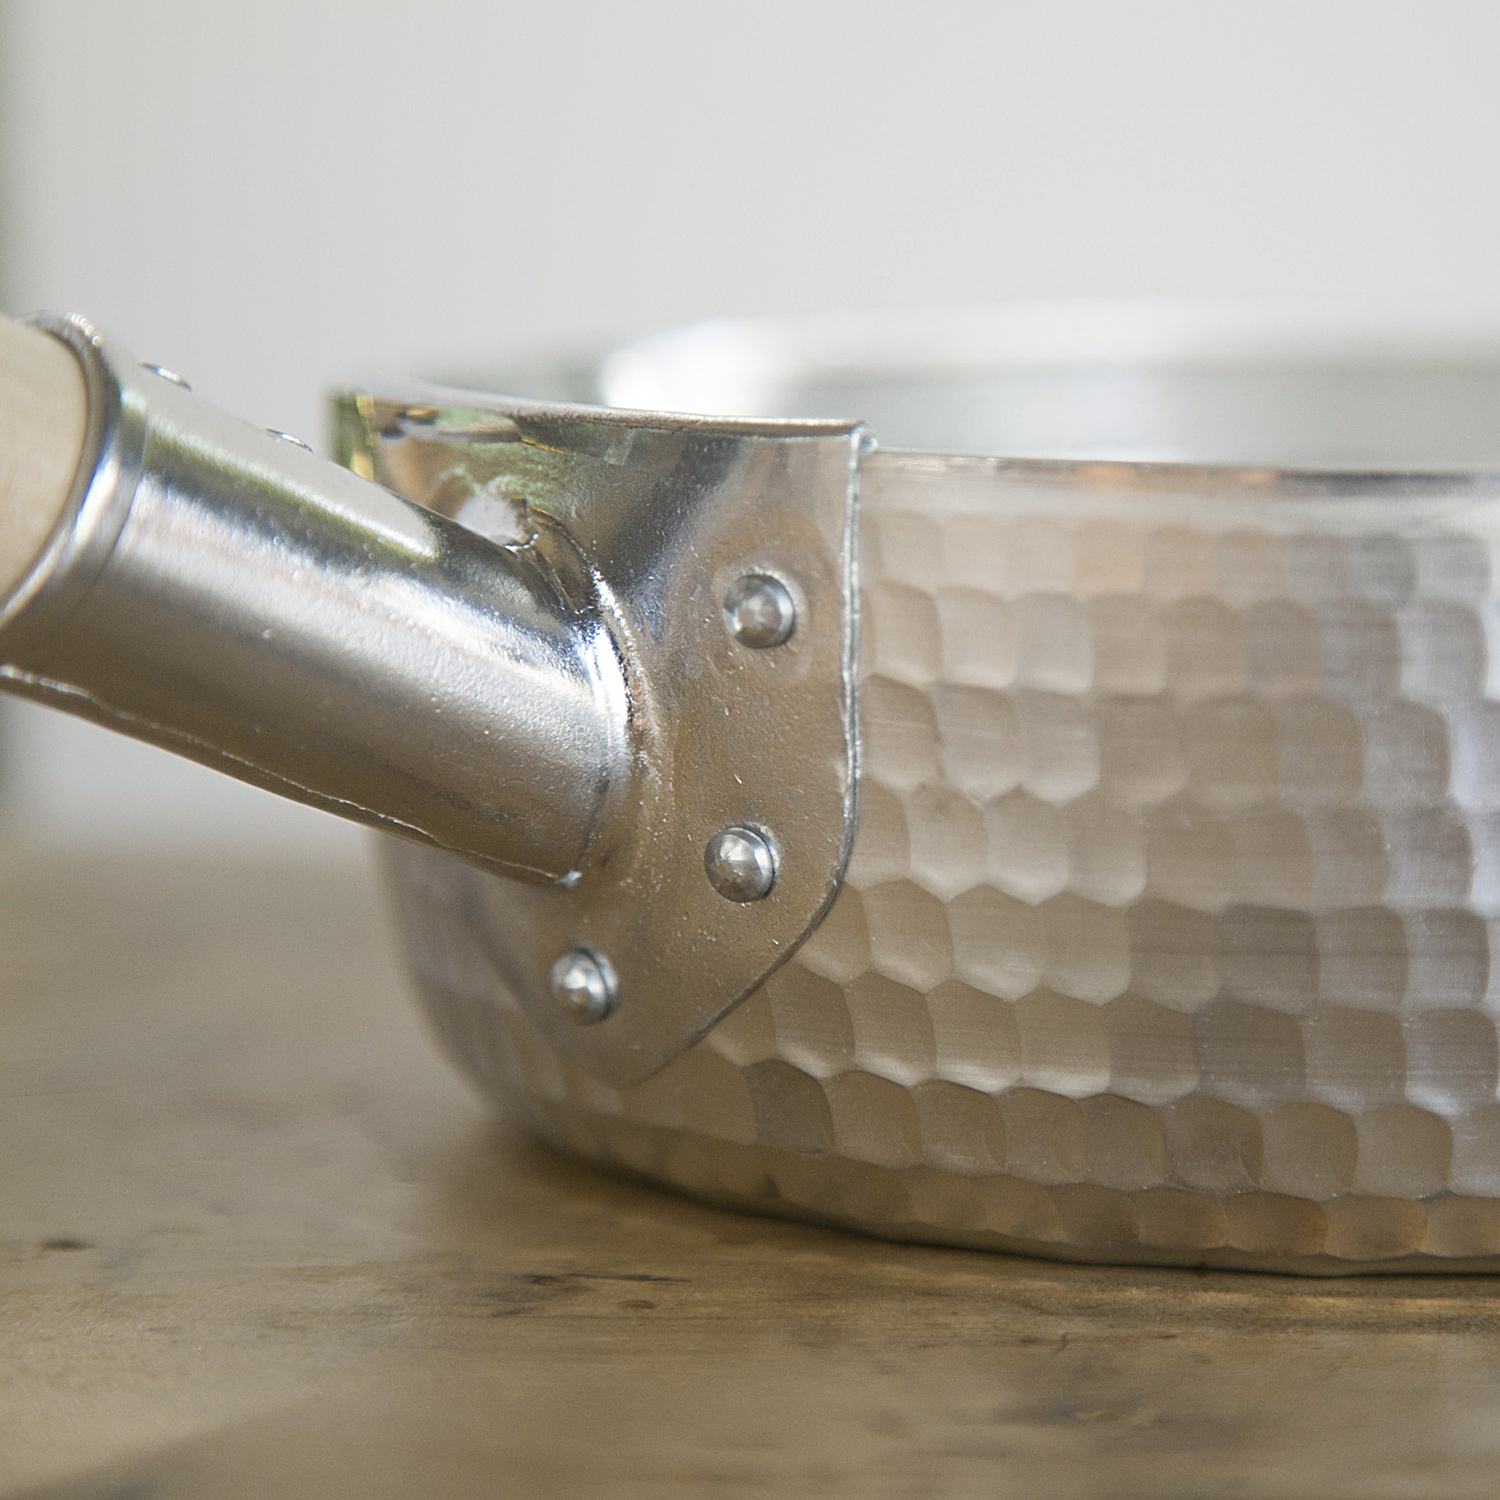 中村銅器製作所/アルミ特製行平鍋 15cm - 軽く丈夫で扱いやすい、アルミで作った行平鍋